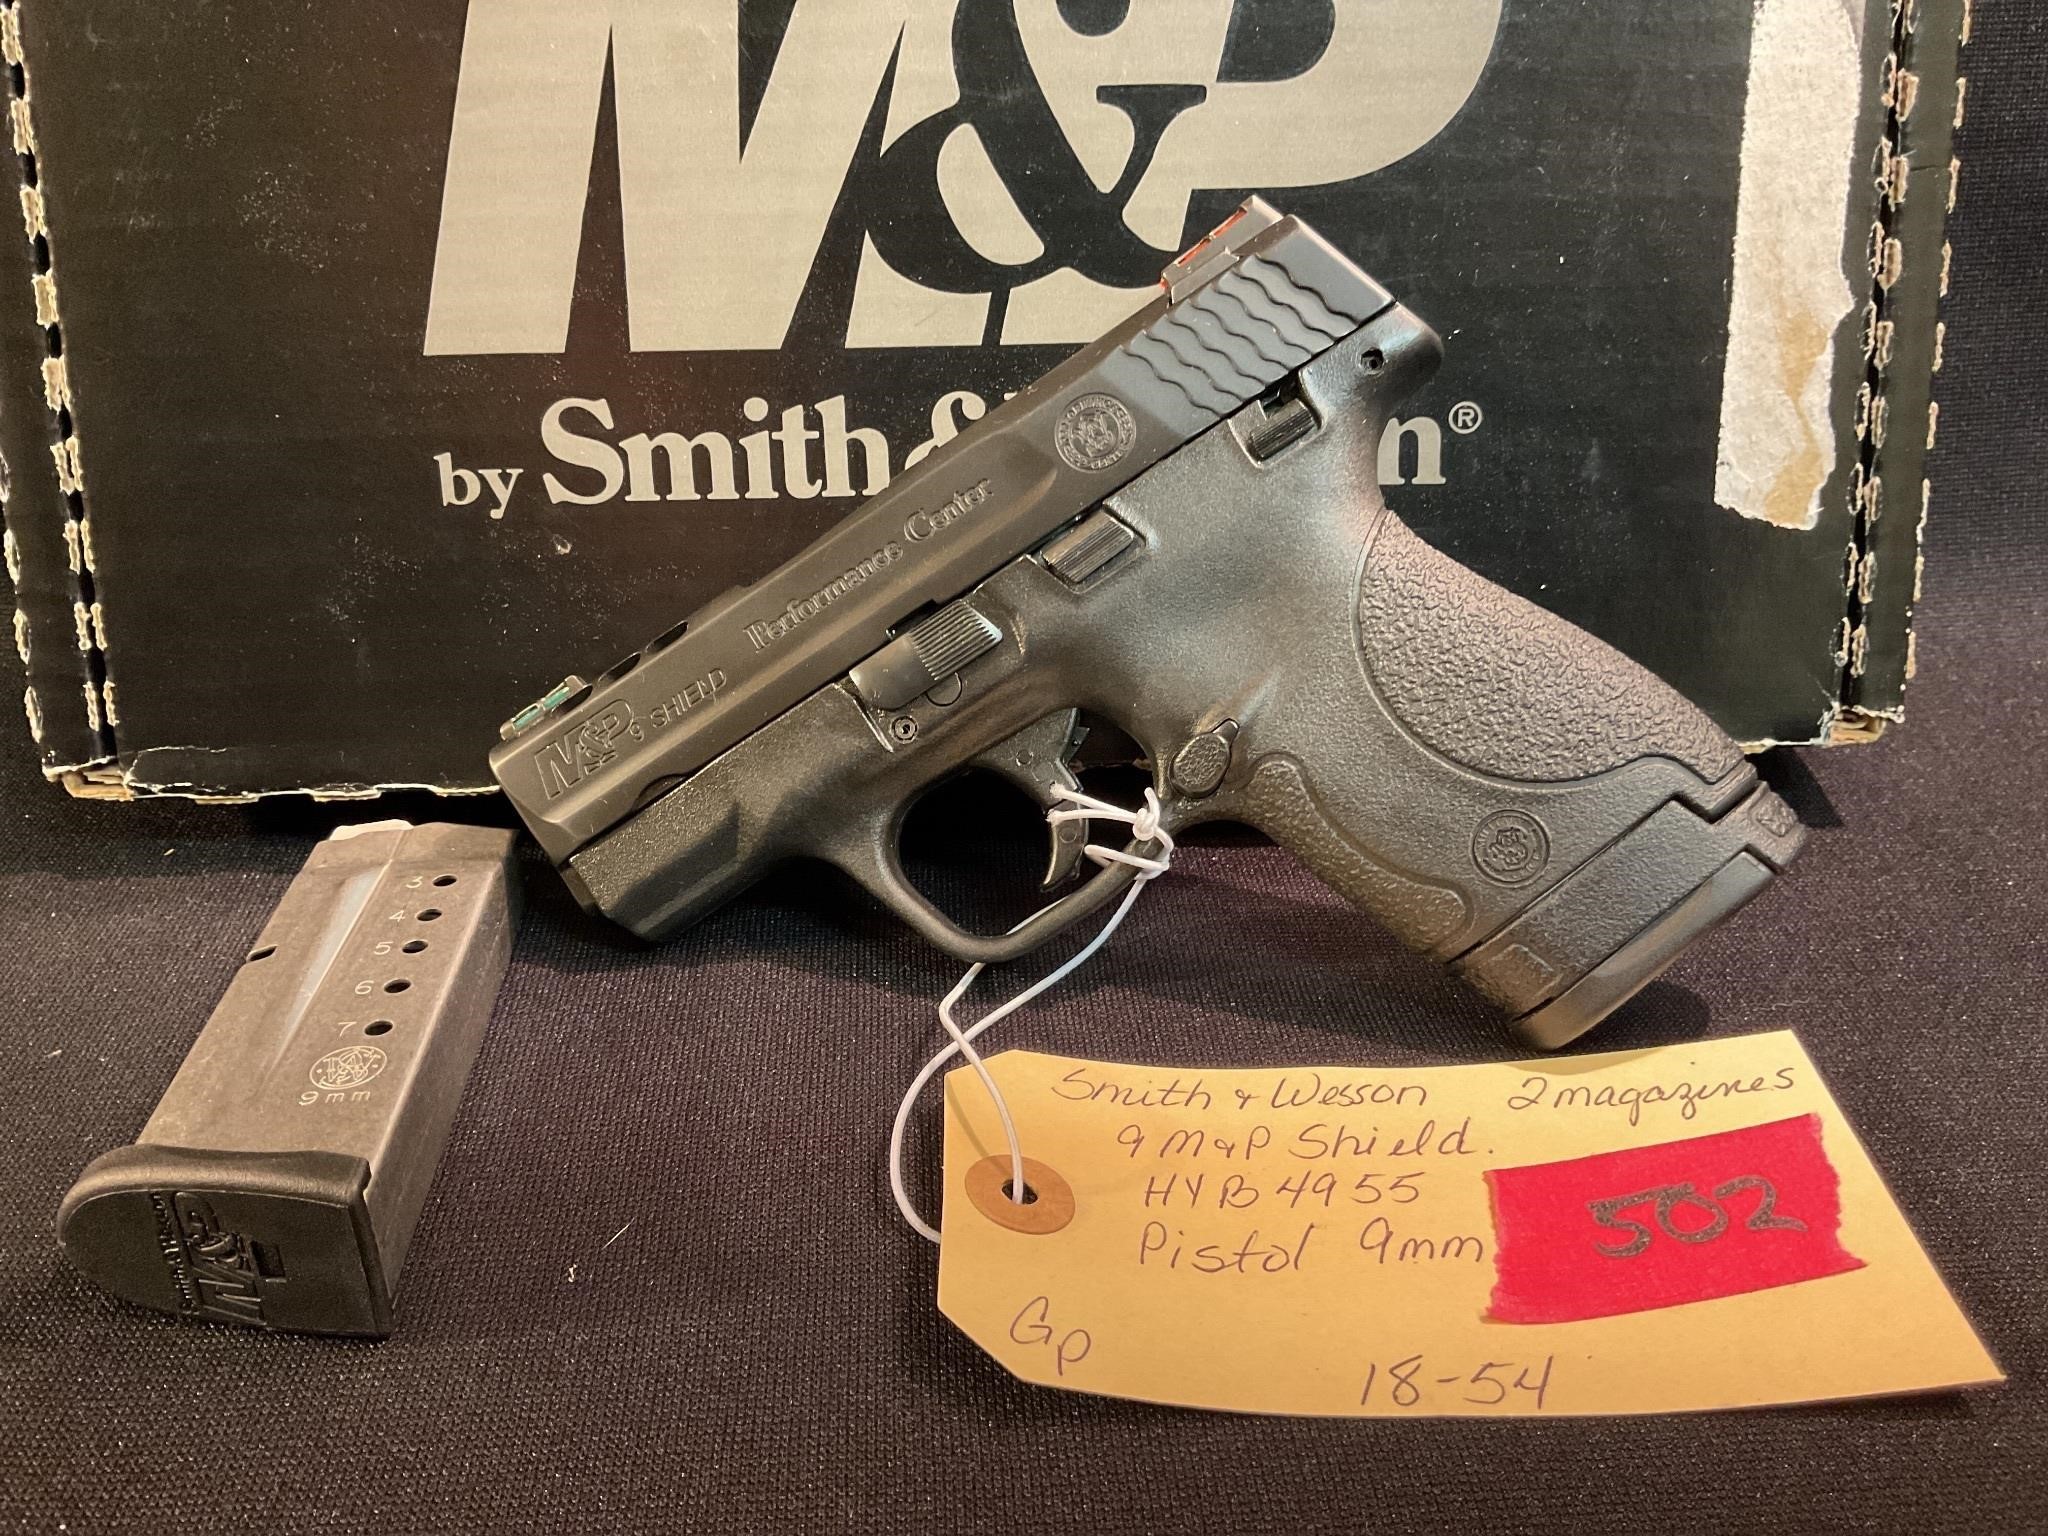 S&w m&p shield 9 mm pistol,2 mags,ib